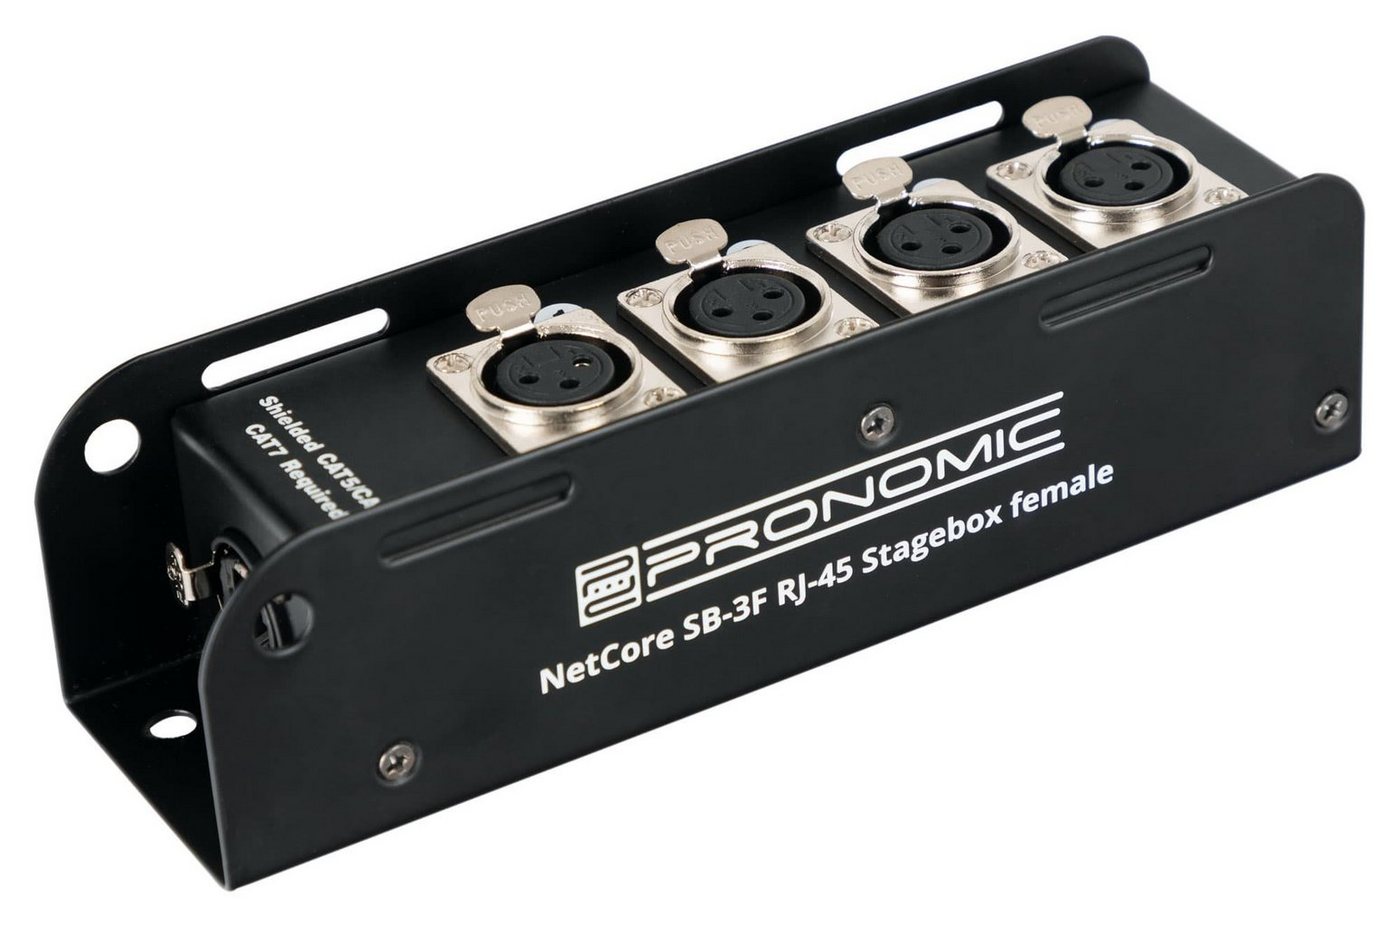 Pronomic NetCore SB-3F Multicore-Stagebox female Audio-Kabel, XLR-Buchsen (female), auf RJ45 Buchse, zur Übertragung analoger oder digitaler Signale von Pronomic